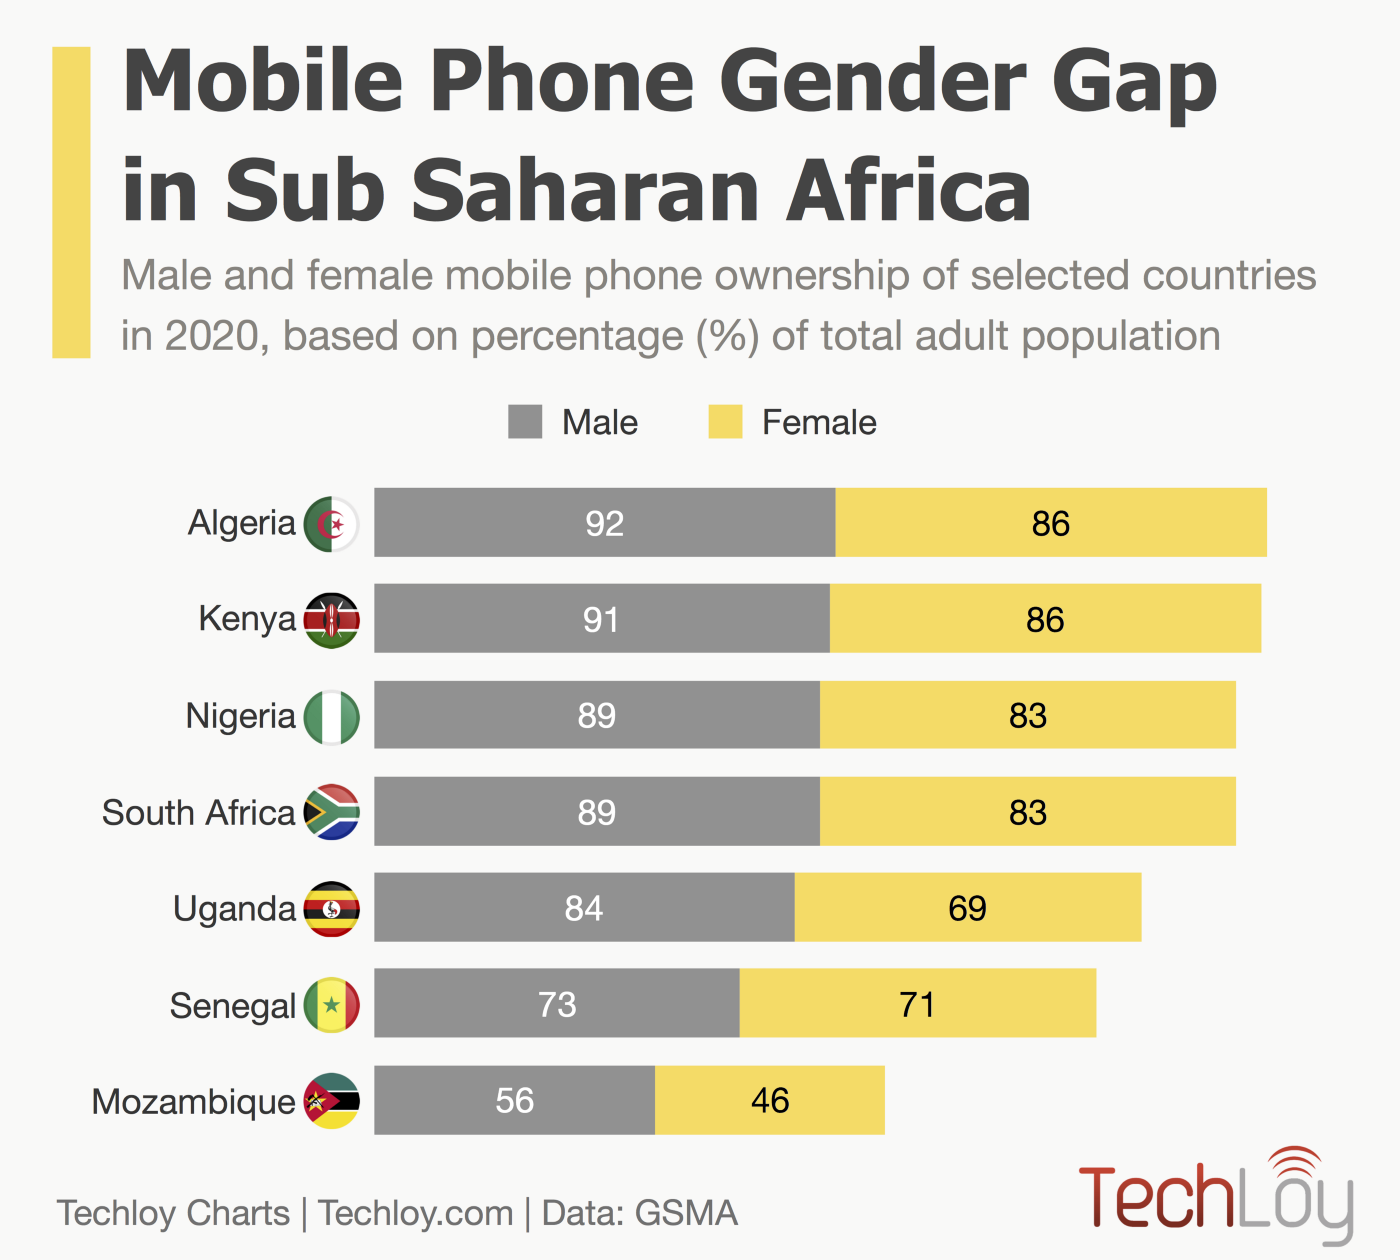 Mobile Phone Gender Gap in Sub-Saharan Africa in 2020